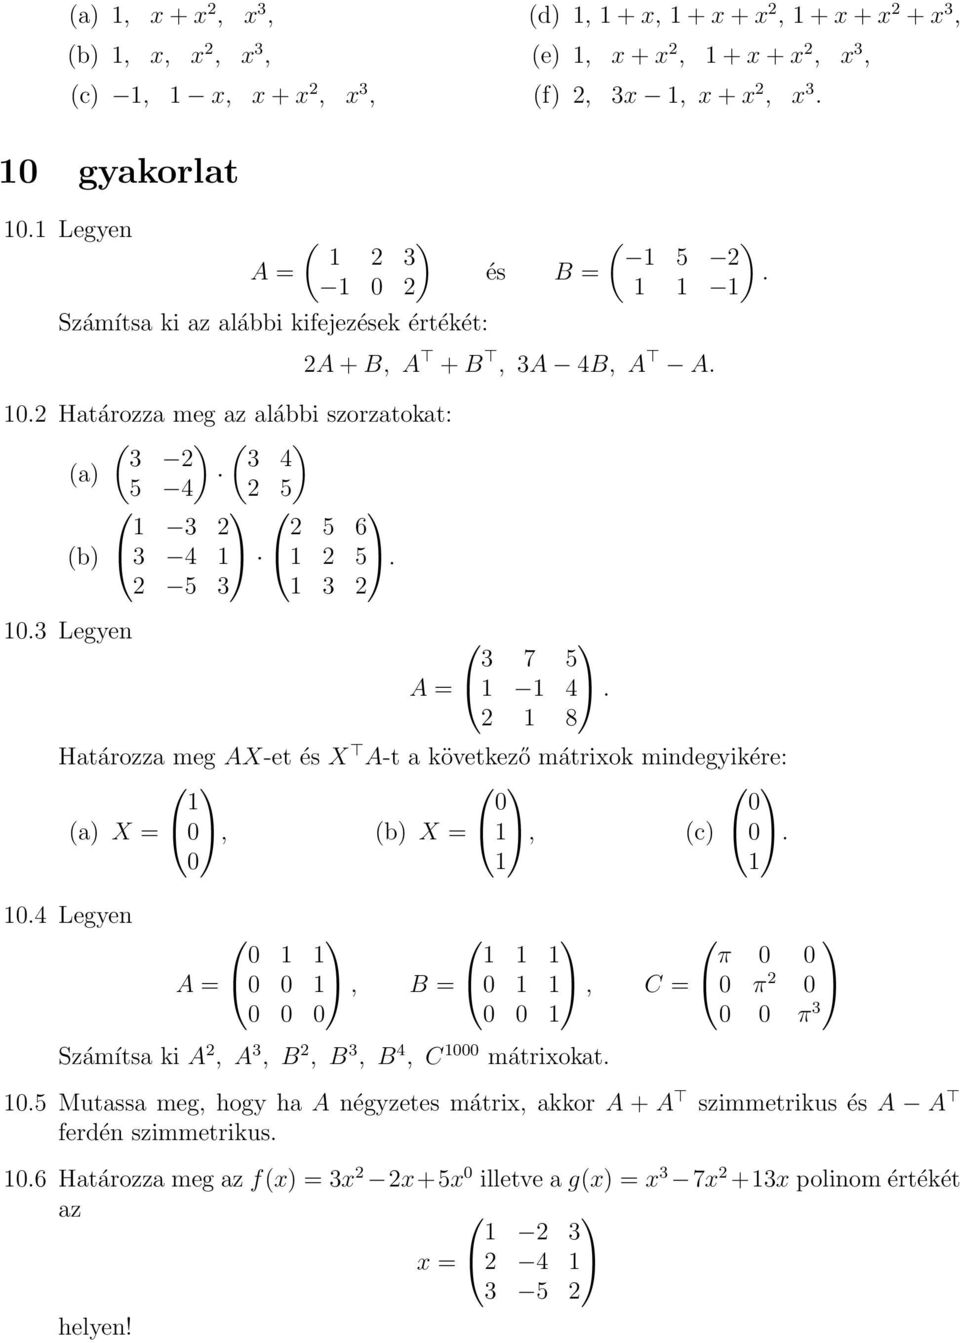 2A + B, A + B, 3A 4B, A A. 3 7 5 A = 4. 2 8 Határozza meg AX-et és X A-t a következő mátrixok mindegyikére: (a) X = 0, 0 (b) X =, 0 (c) 0. 0 0.